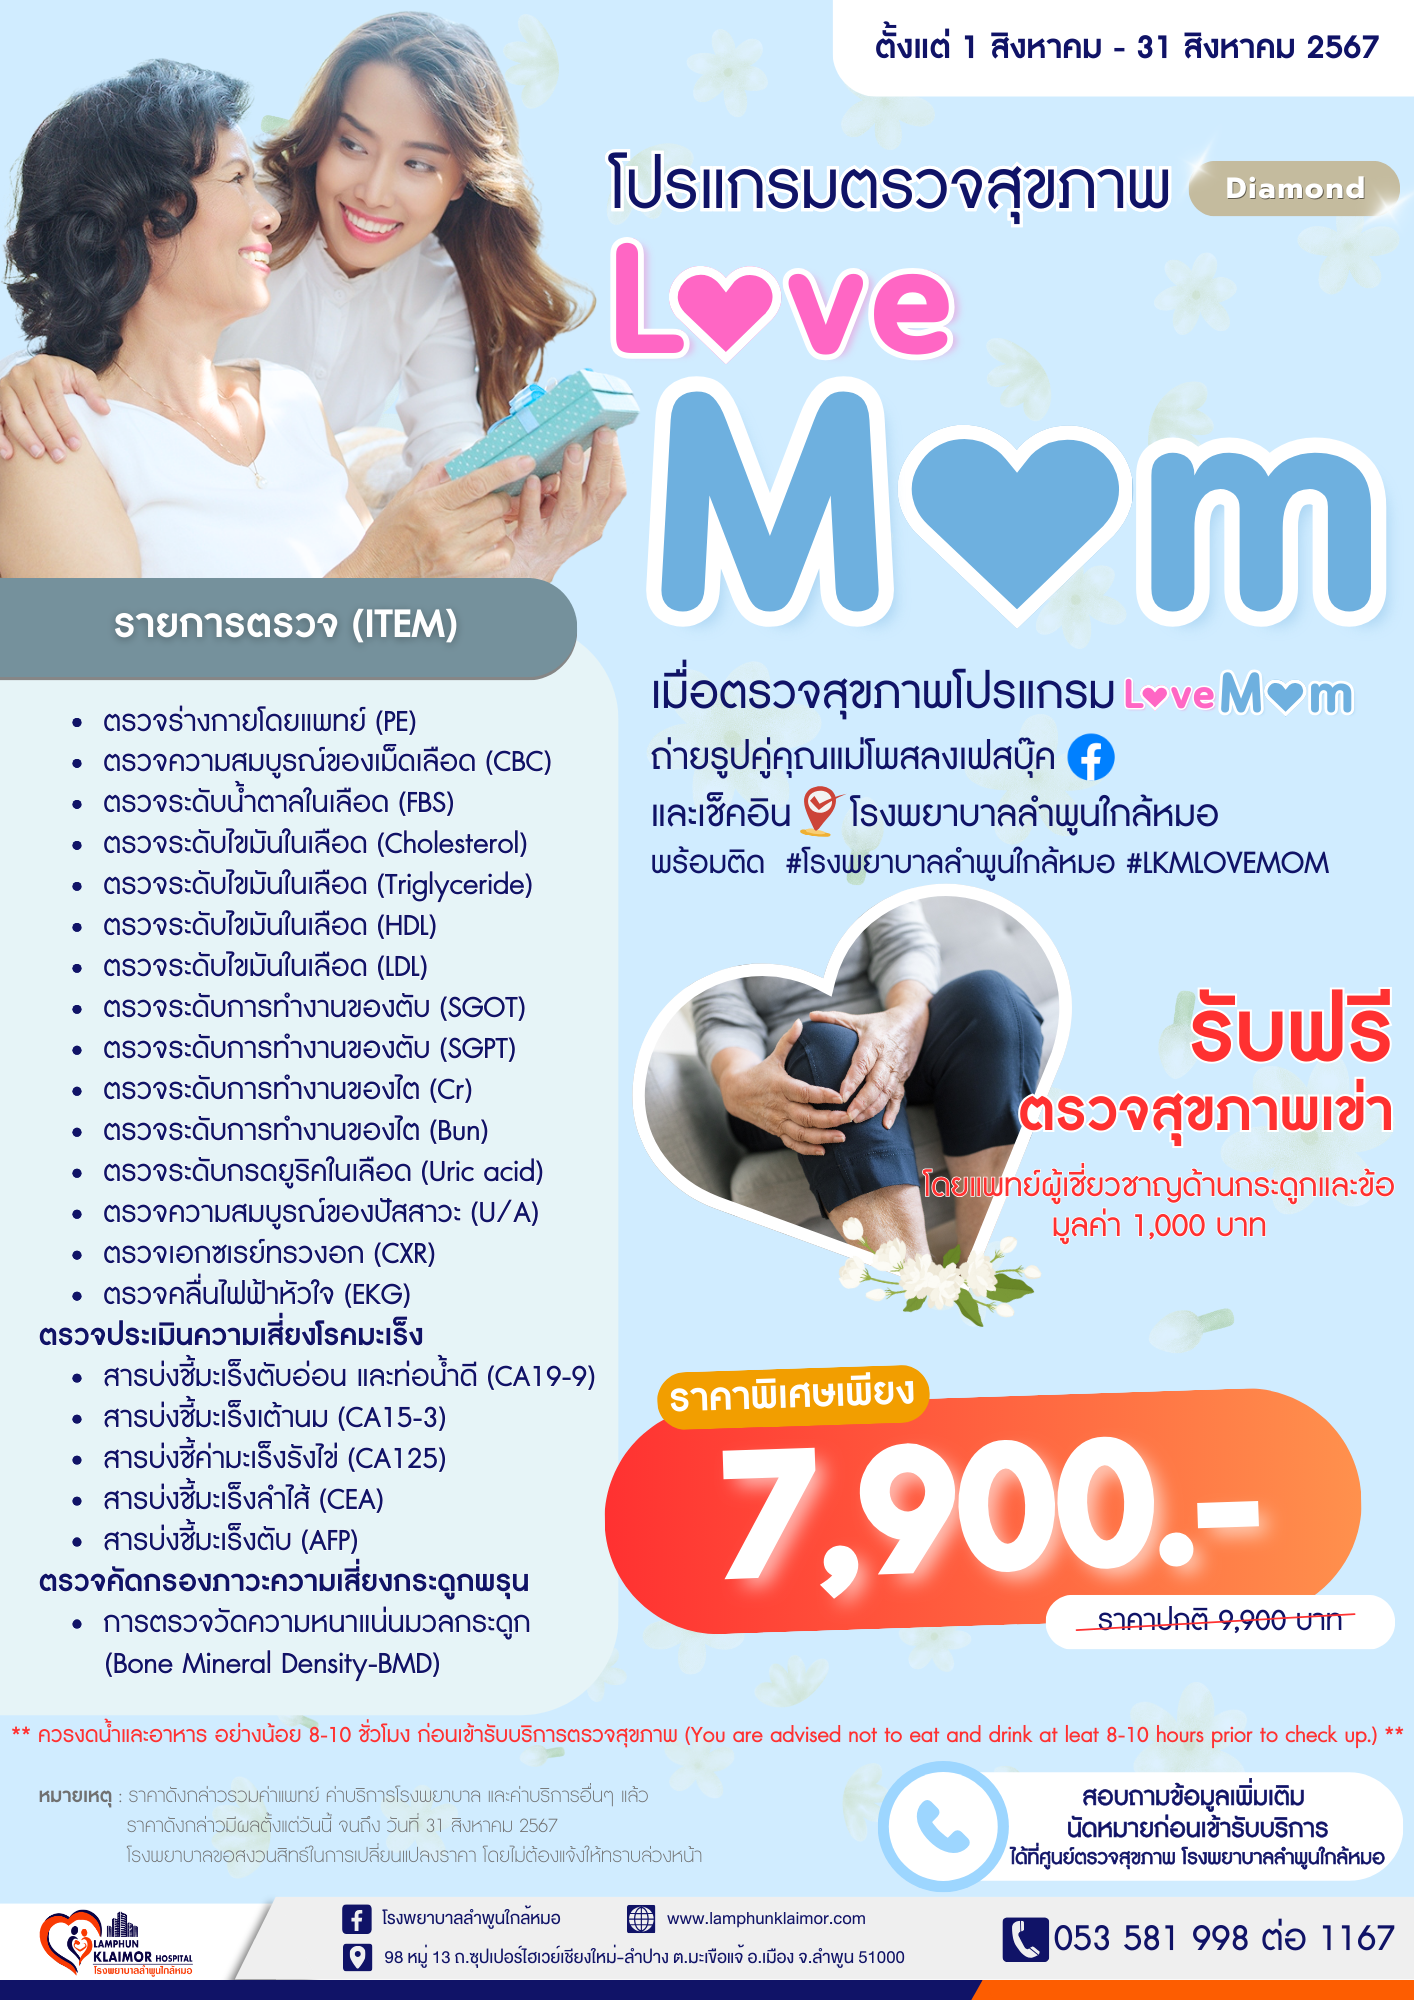 โปรแกรมตรวจสุขภาพ Love Mom